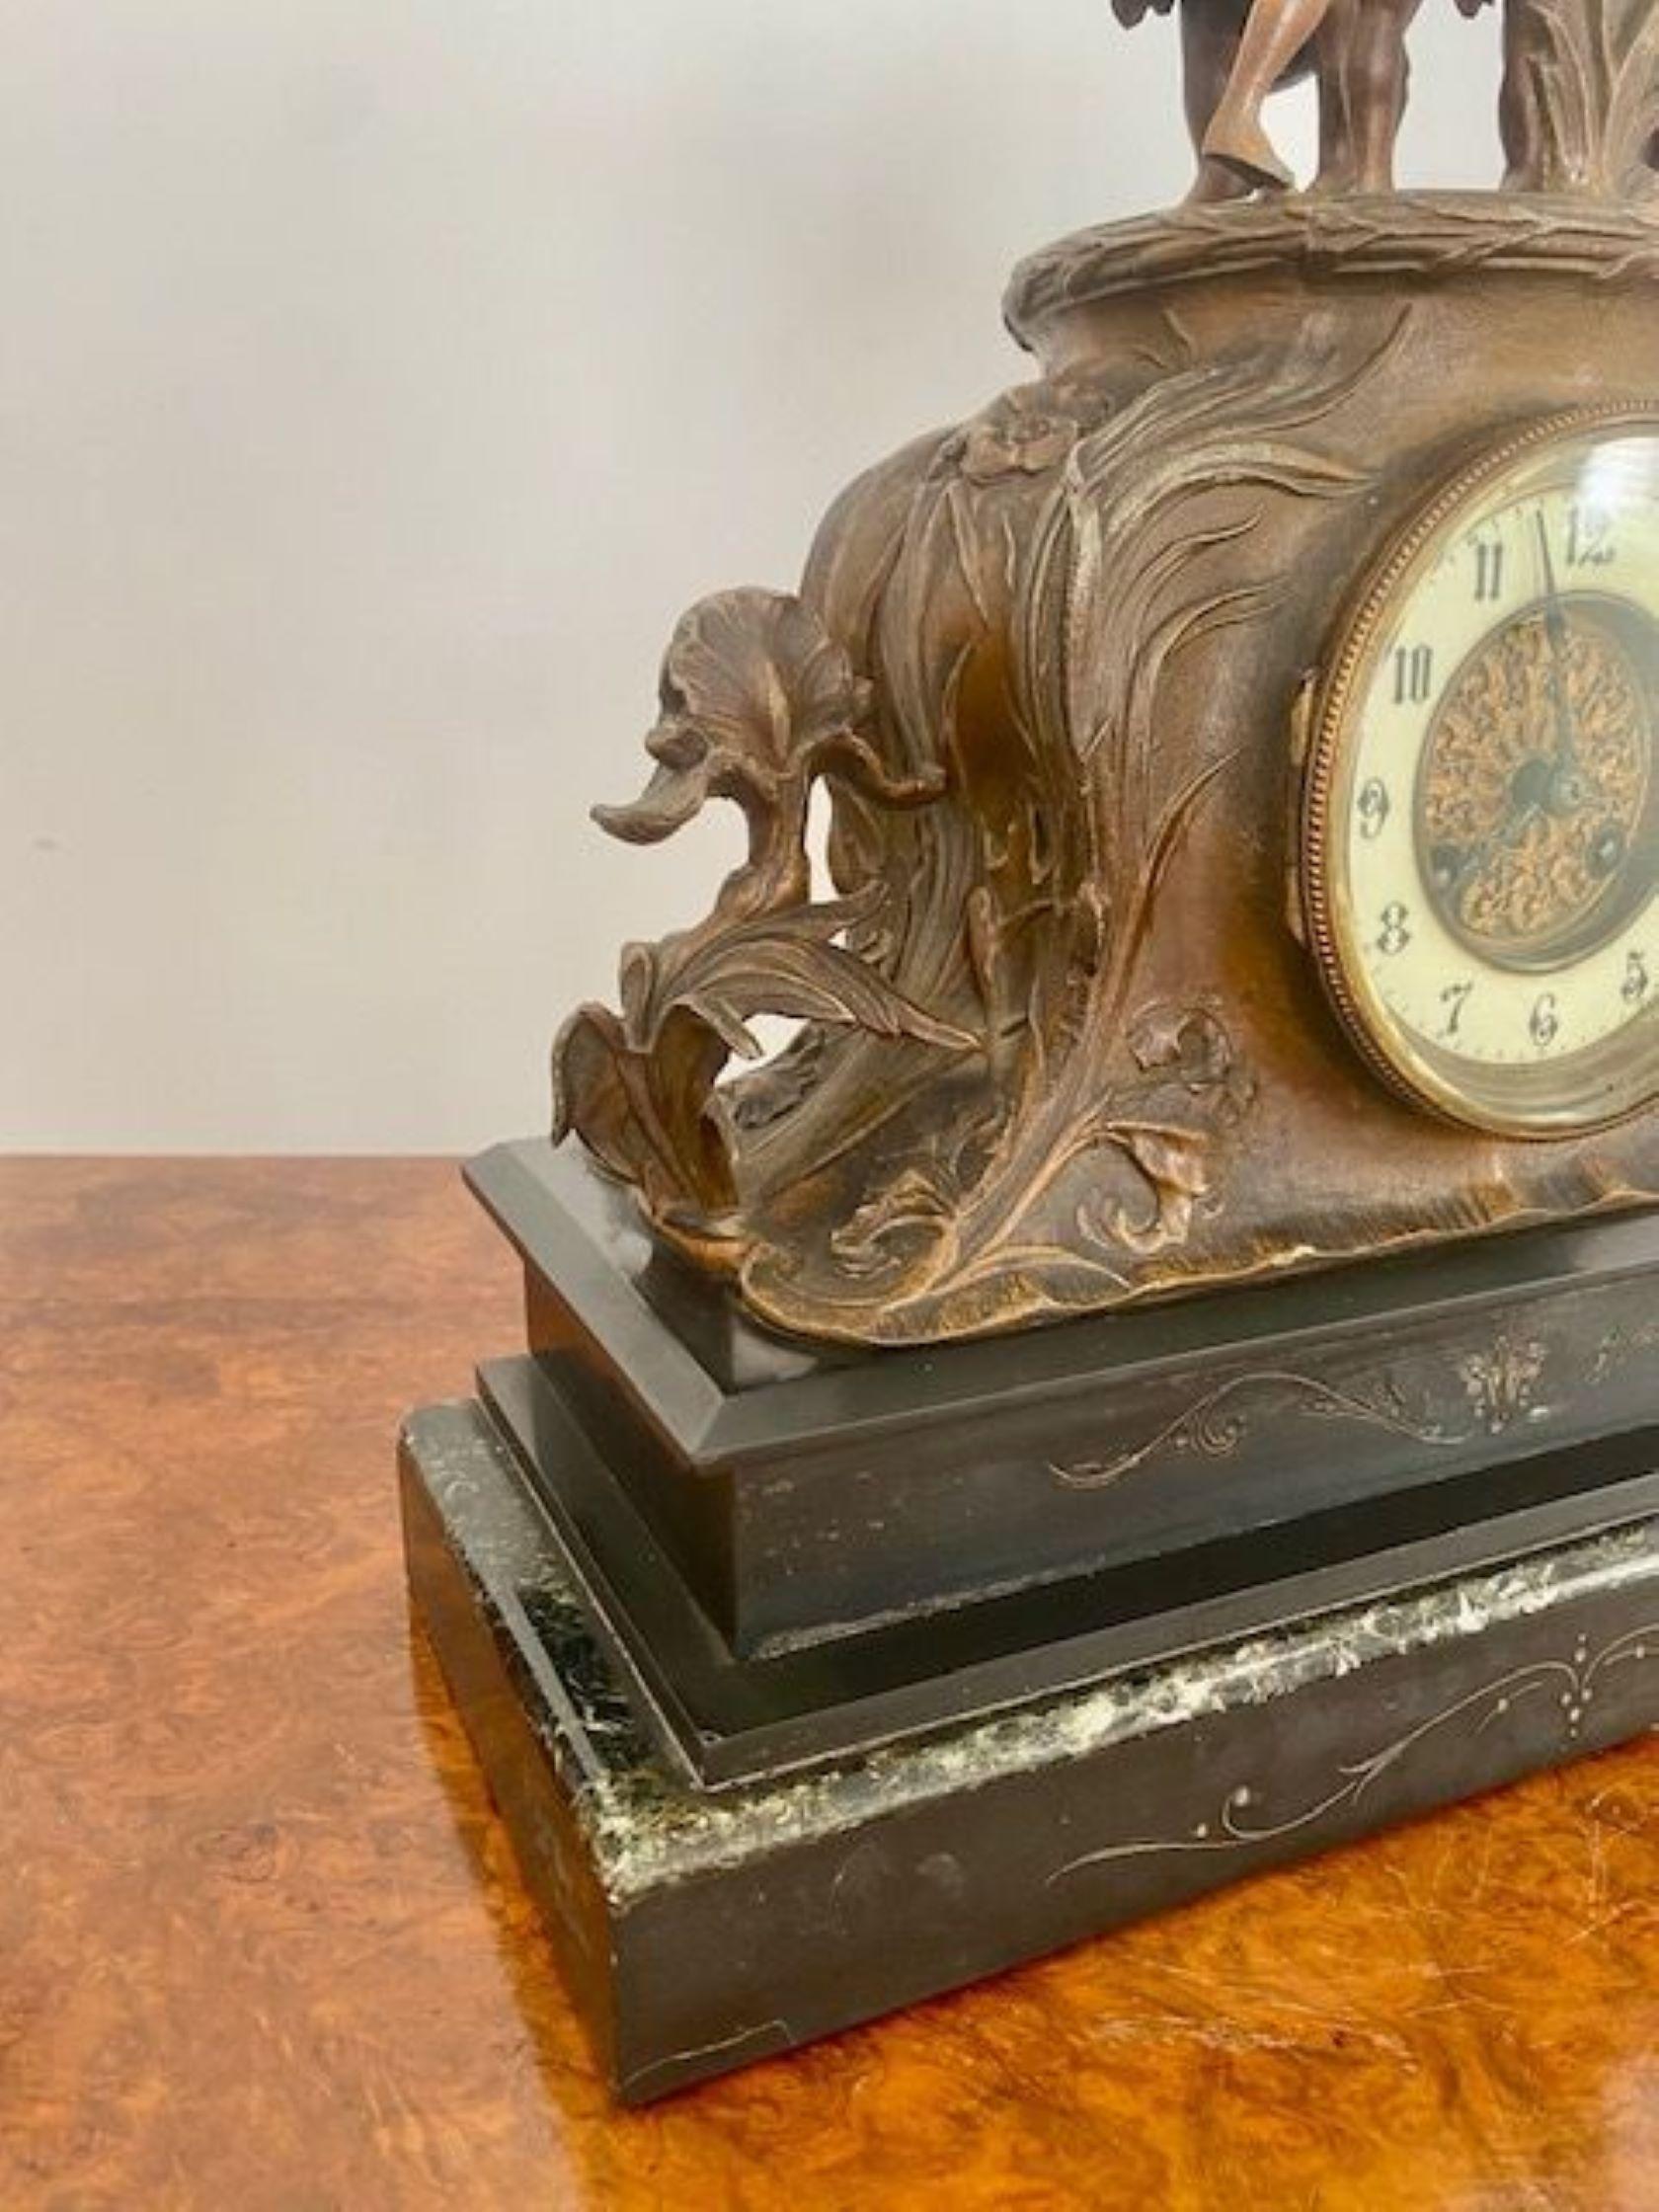 Große antike viktorianische Marmor-Mantel-Uhr mit Marley-Pferden auf der Oberseite in Schutz, runde Uhr mit einem Porzellan-Zifferblatt und Original-Zeiger, 8-Tage-Uhrwerk schlägt die Stunde und halbe Stunde auf einem Gong stehen auf einem